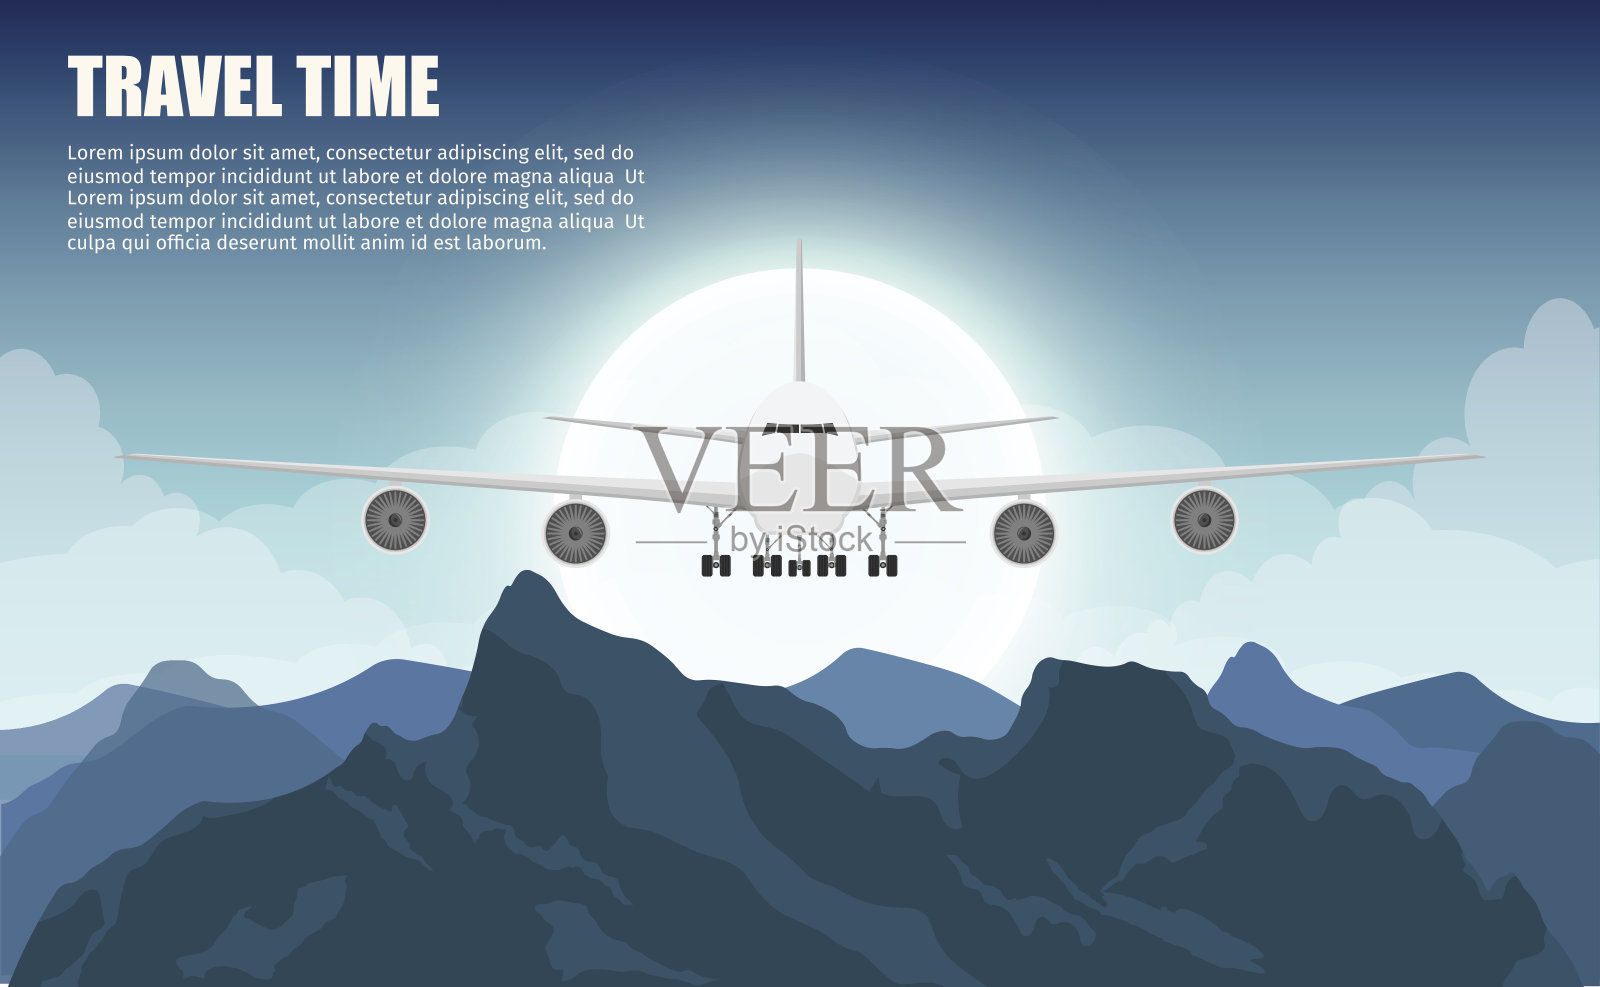 户外旅游飞机用高山彩色矢量平面横幅旅游横幅集。插画图片素材